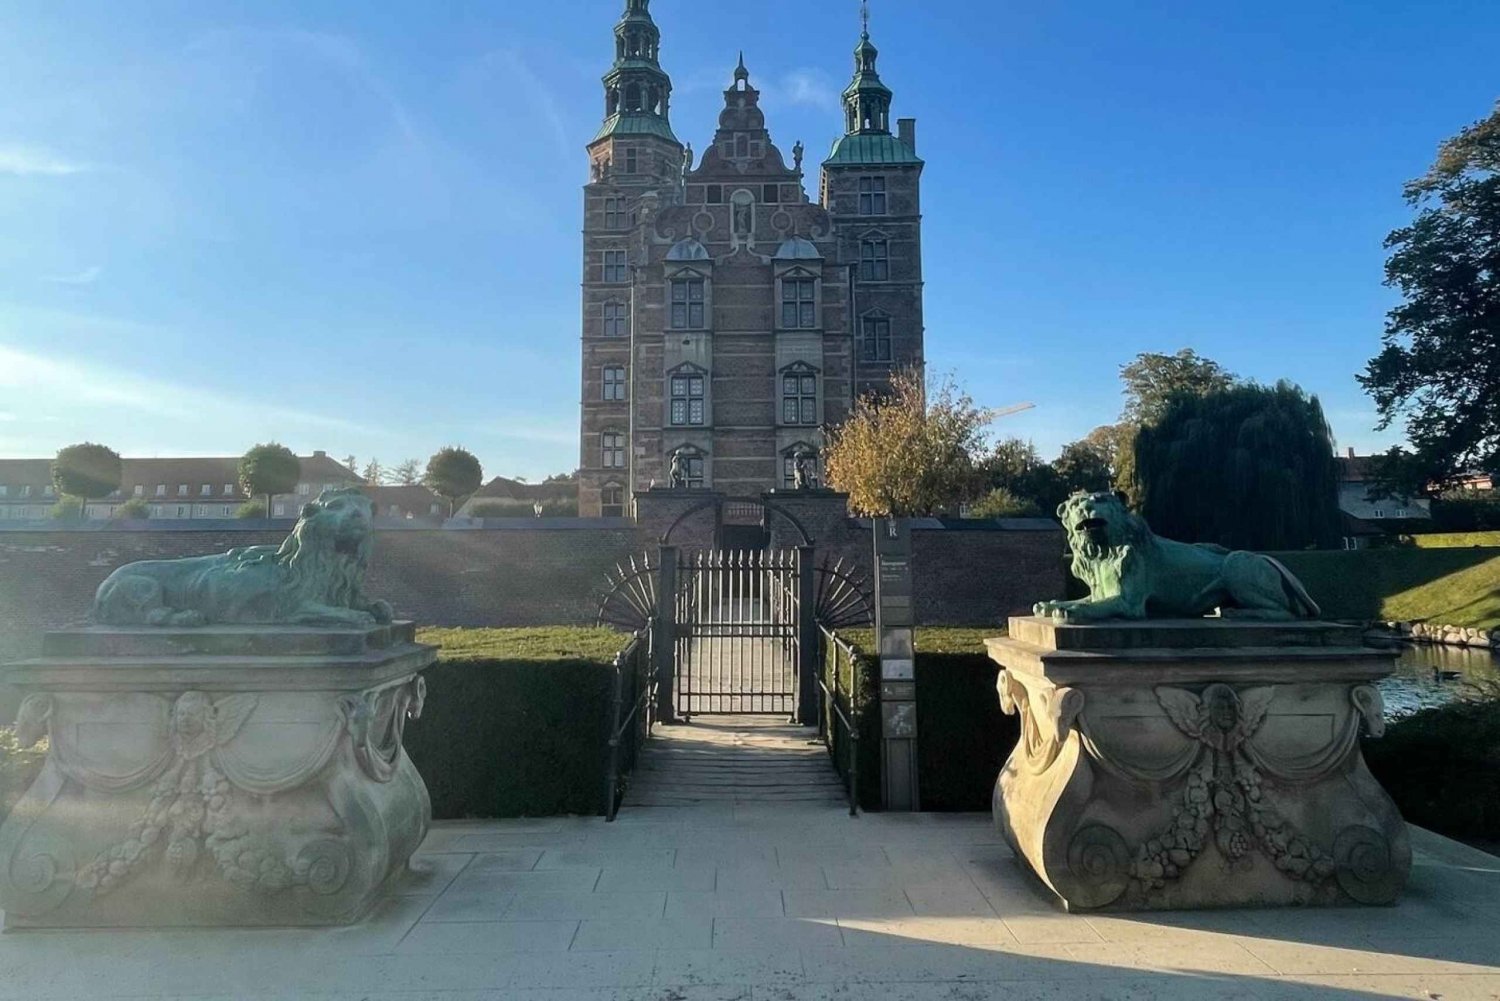 Kopenhagen: King's Garden Outdoor Escape Room Game